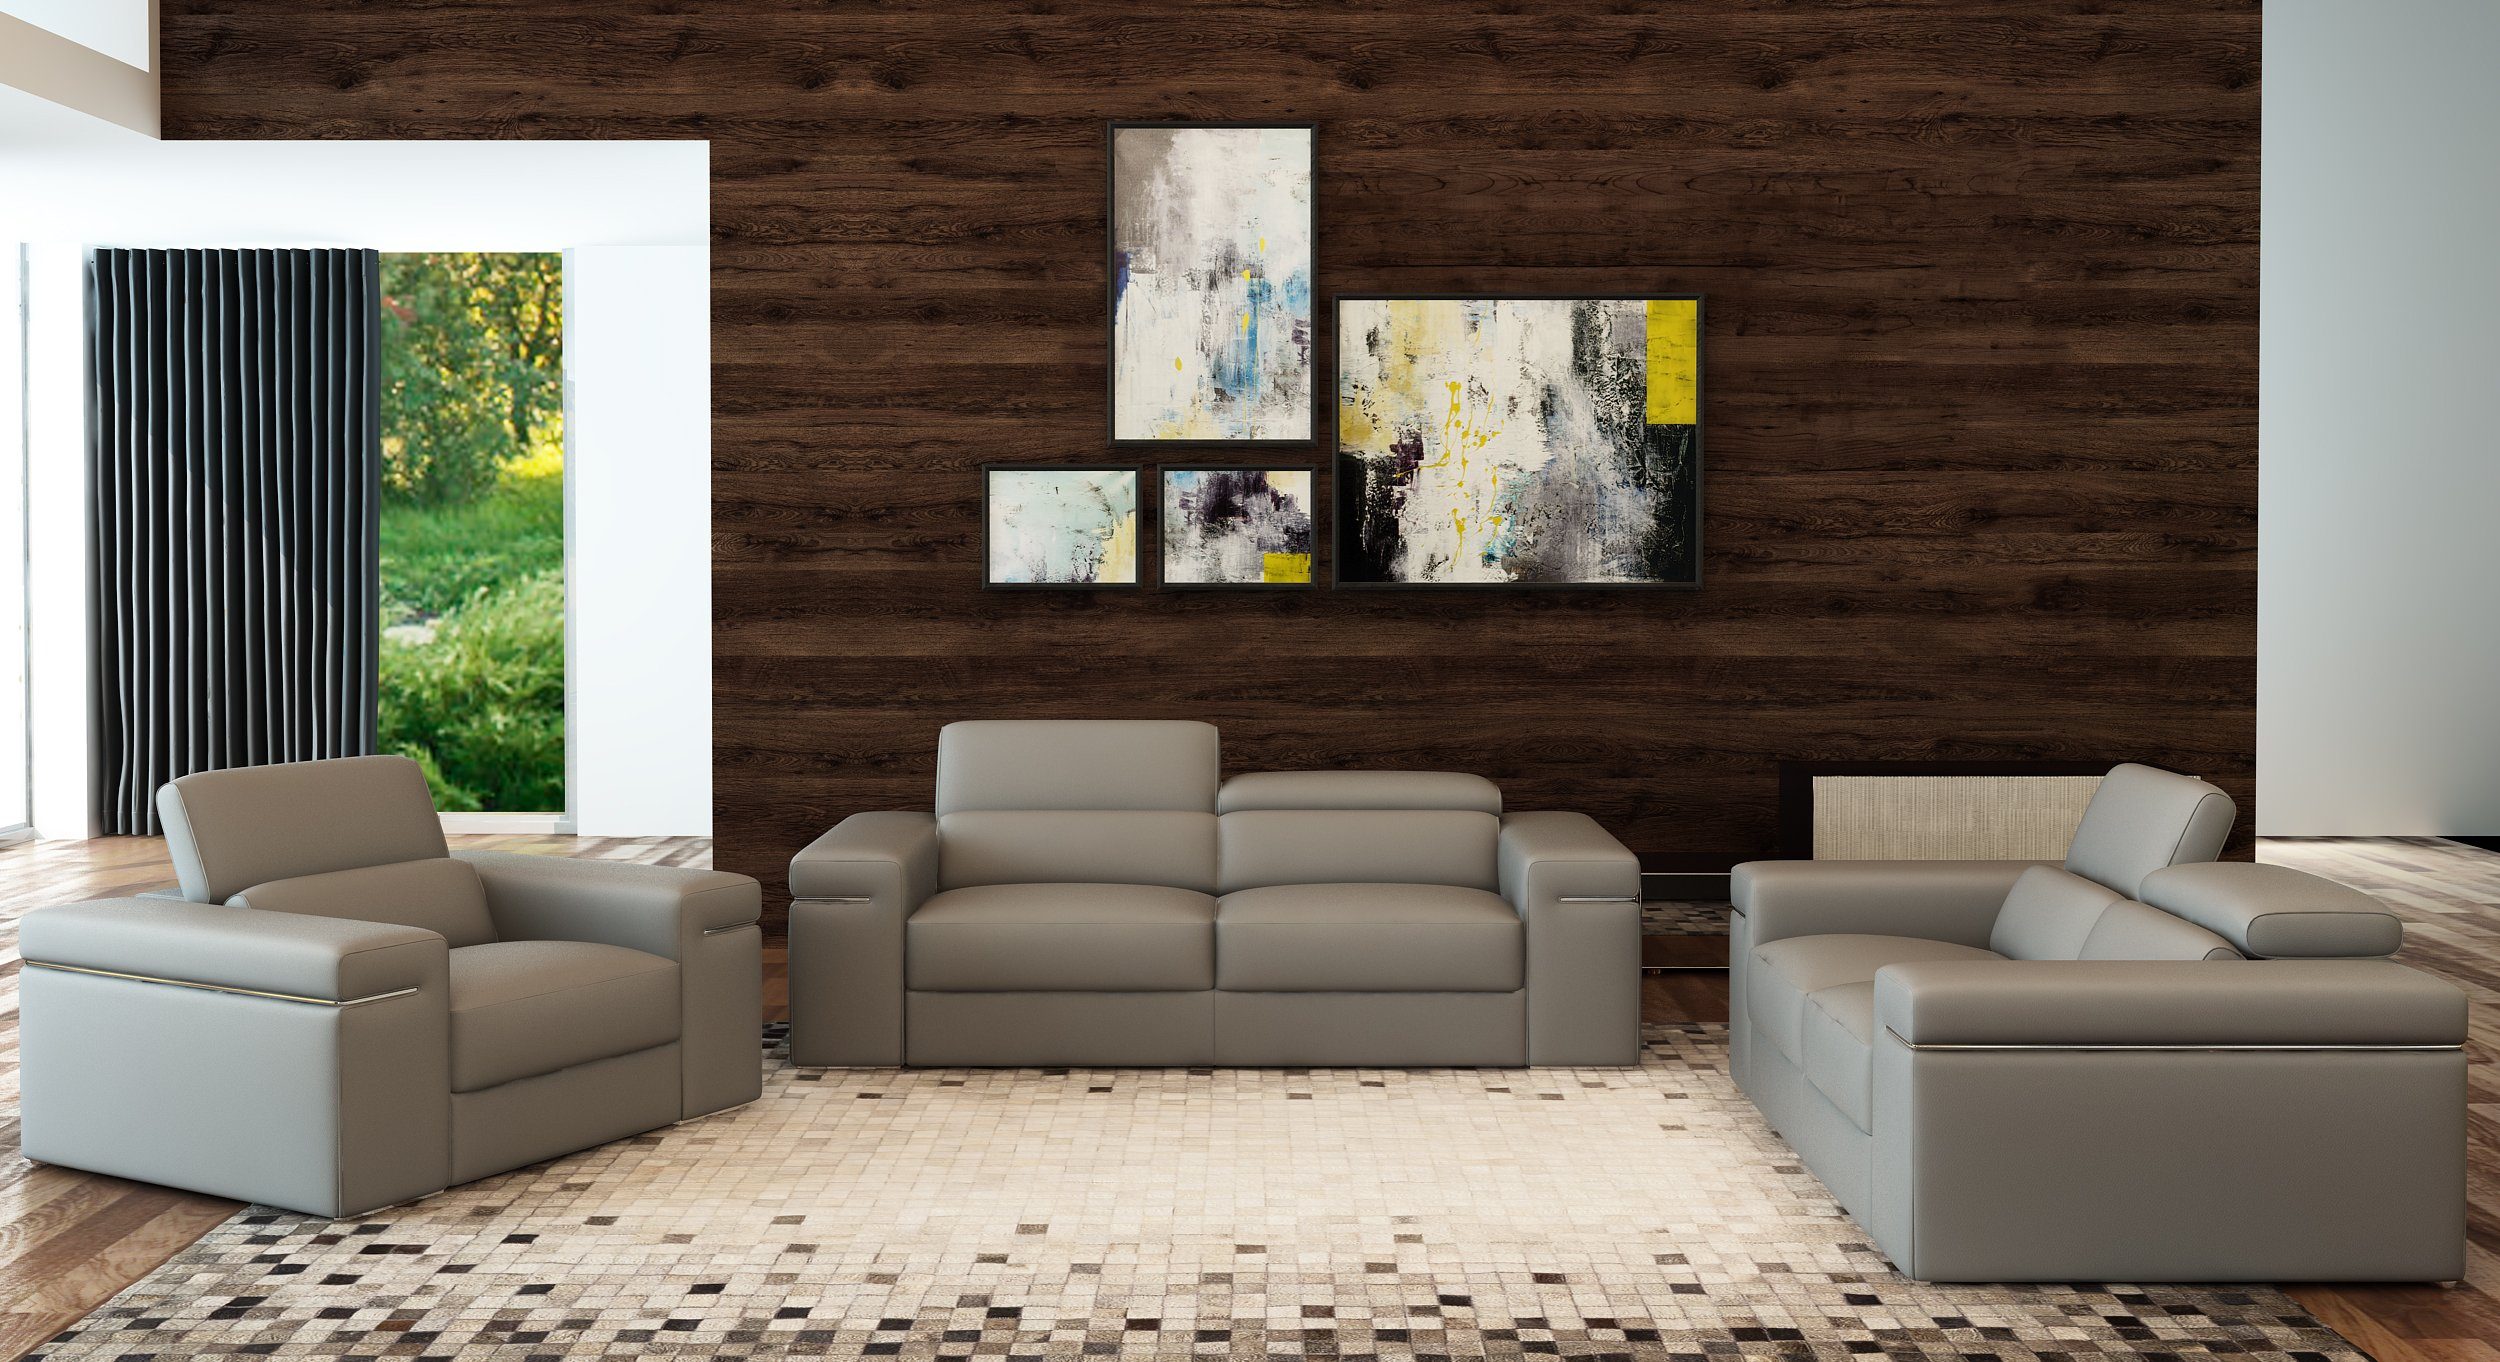 Überprüfen Sie den niedrigsten Preis JVmoebel Sofa Rote Luxus Europe Couch Sofagarnitur Design, in Garnitur Sitzer 3+2+1 Modernes Made